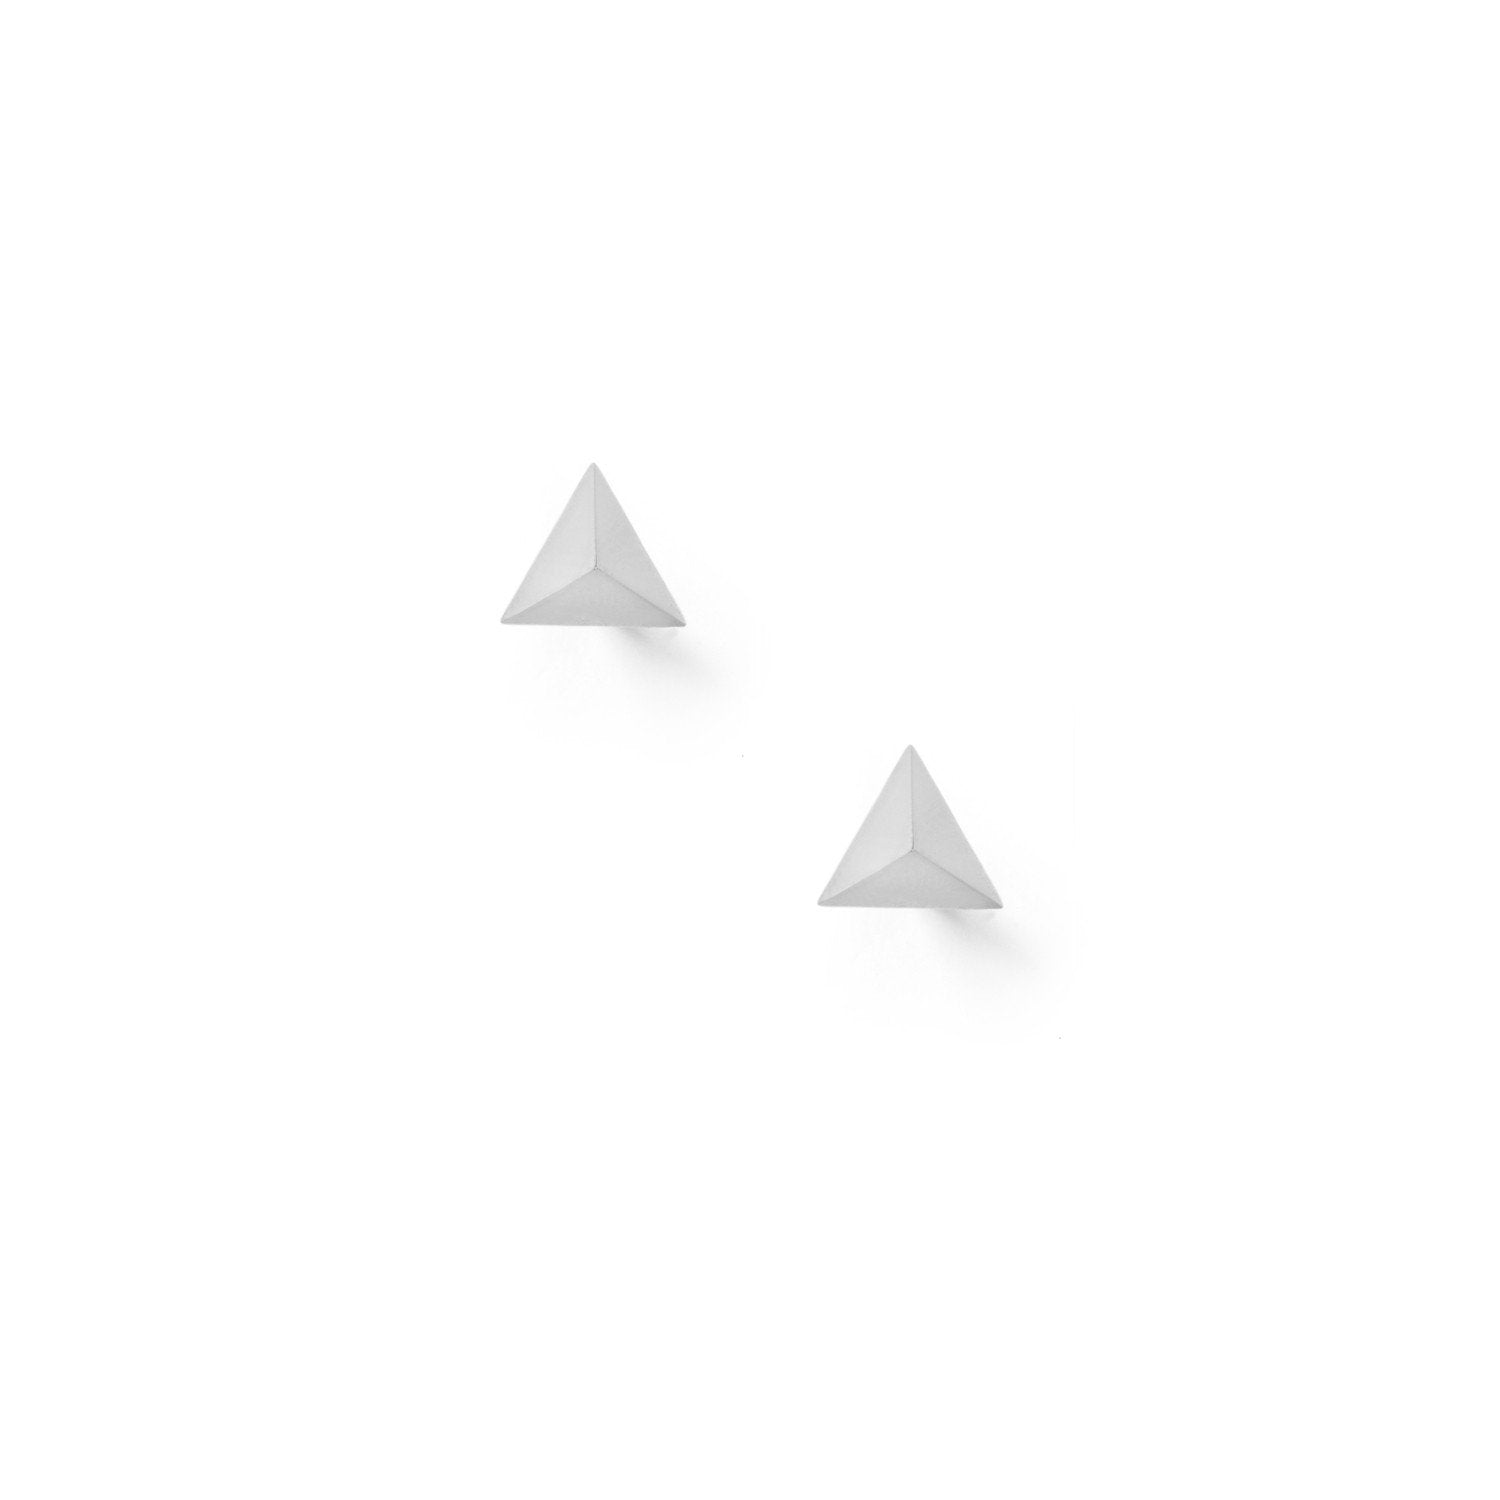 Tetrahedron Stud Earrings - Silver - Myia Bonner Jewellery